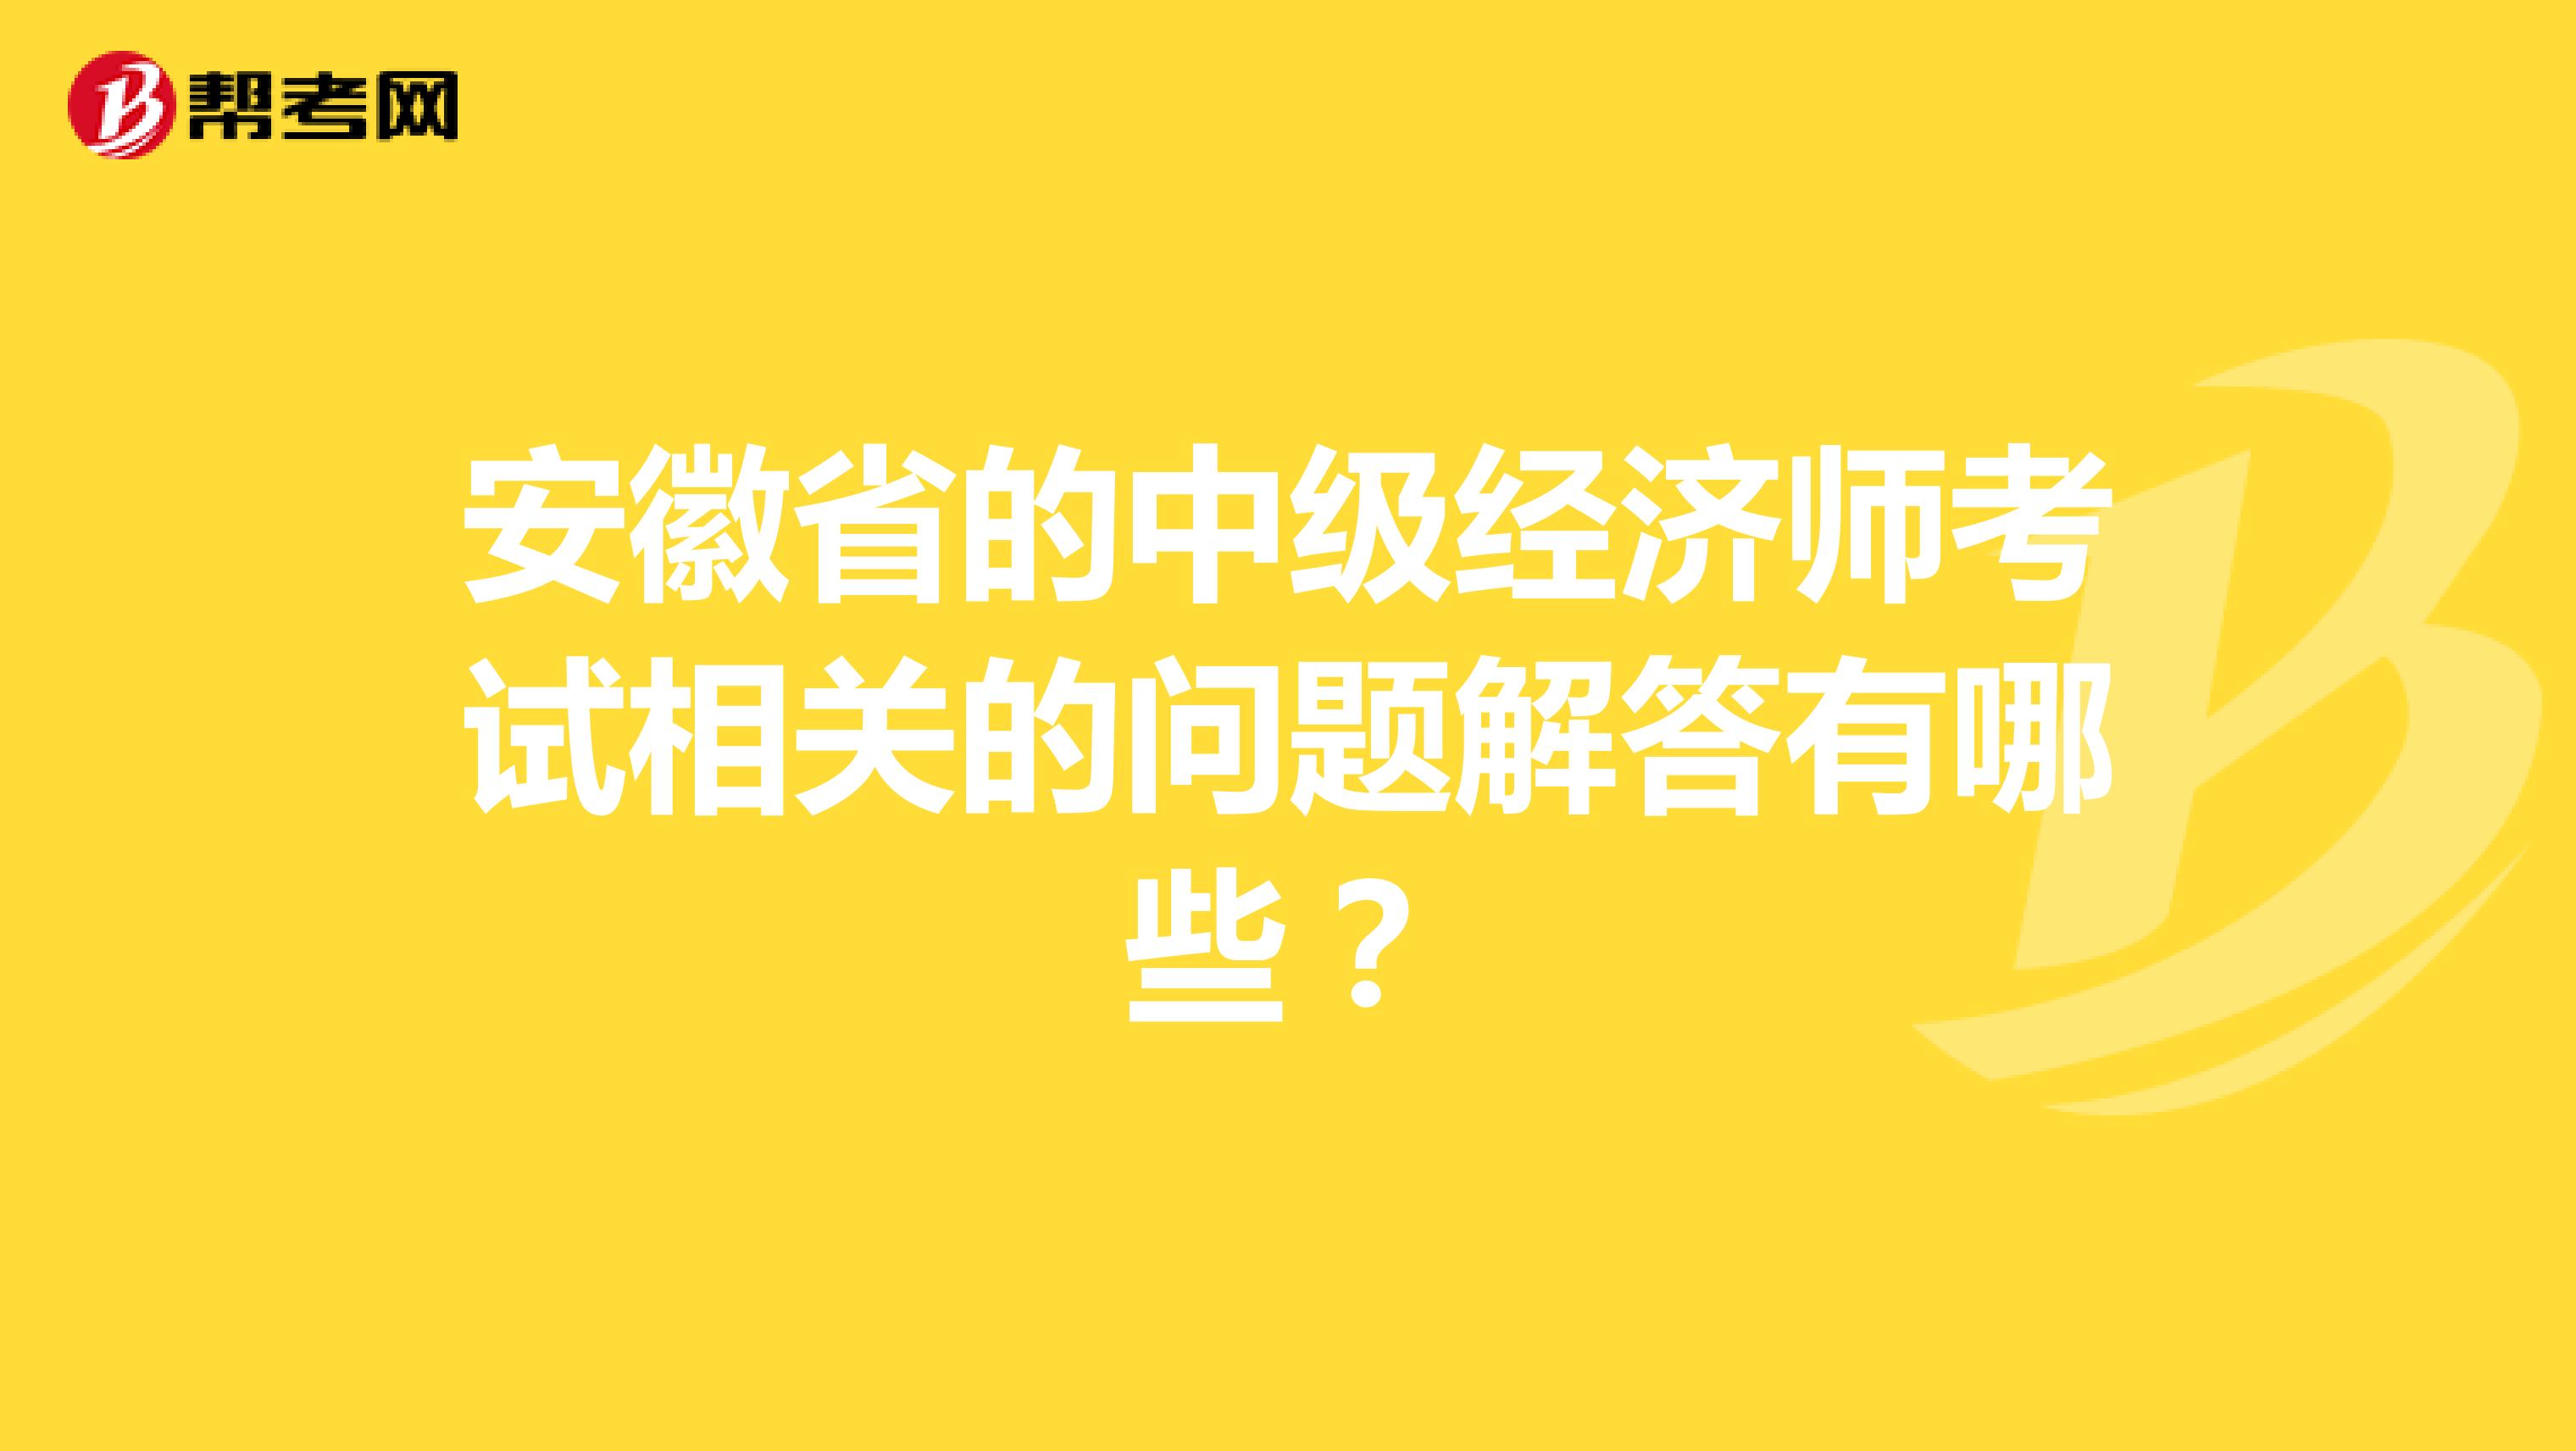 安徽省的中级经济师考试相关的问题解答有哪些？